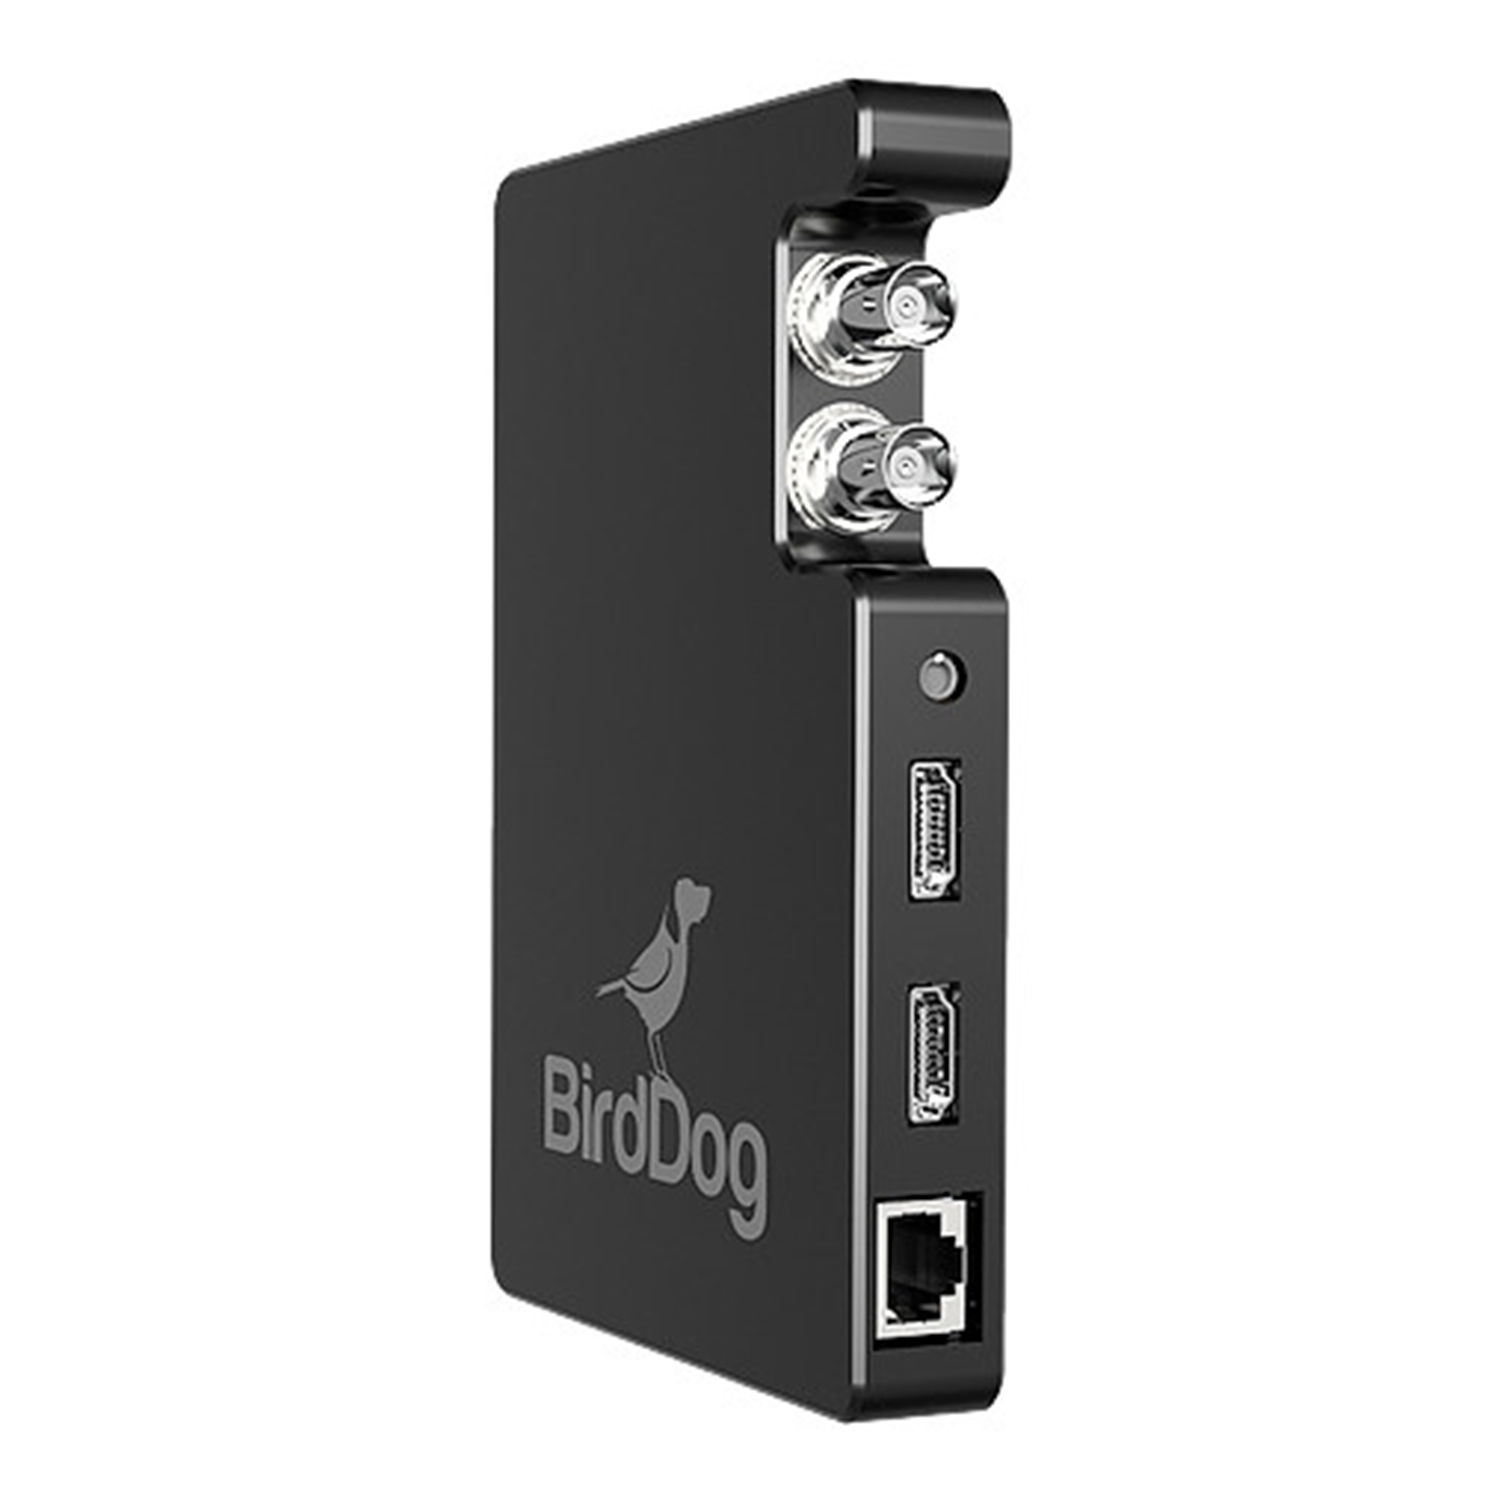 BirdDog Studio NDI SDI/HDMI to NDI Converter